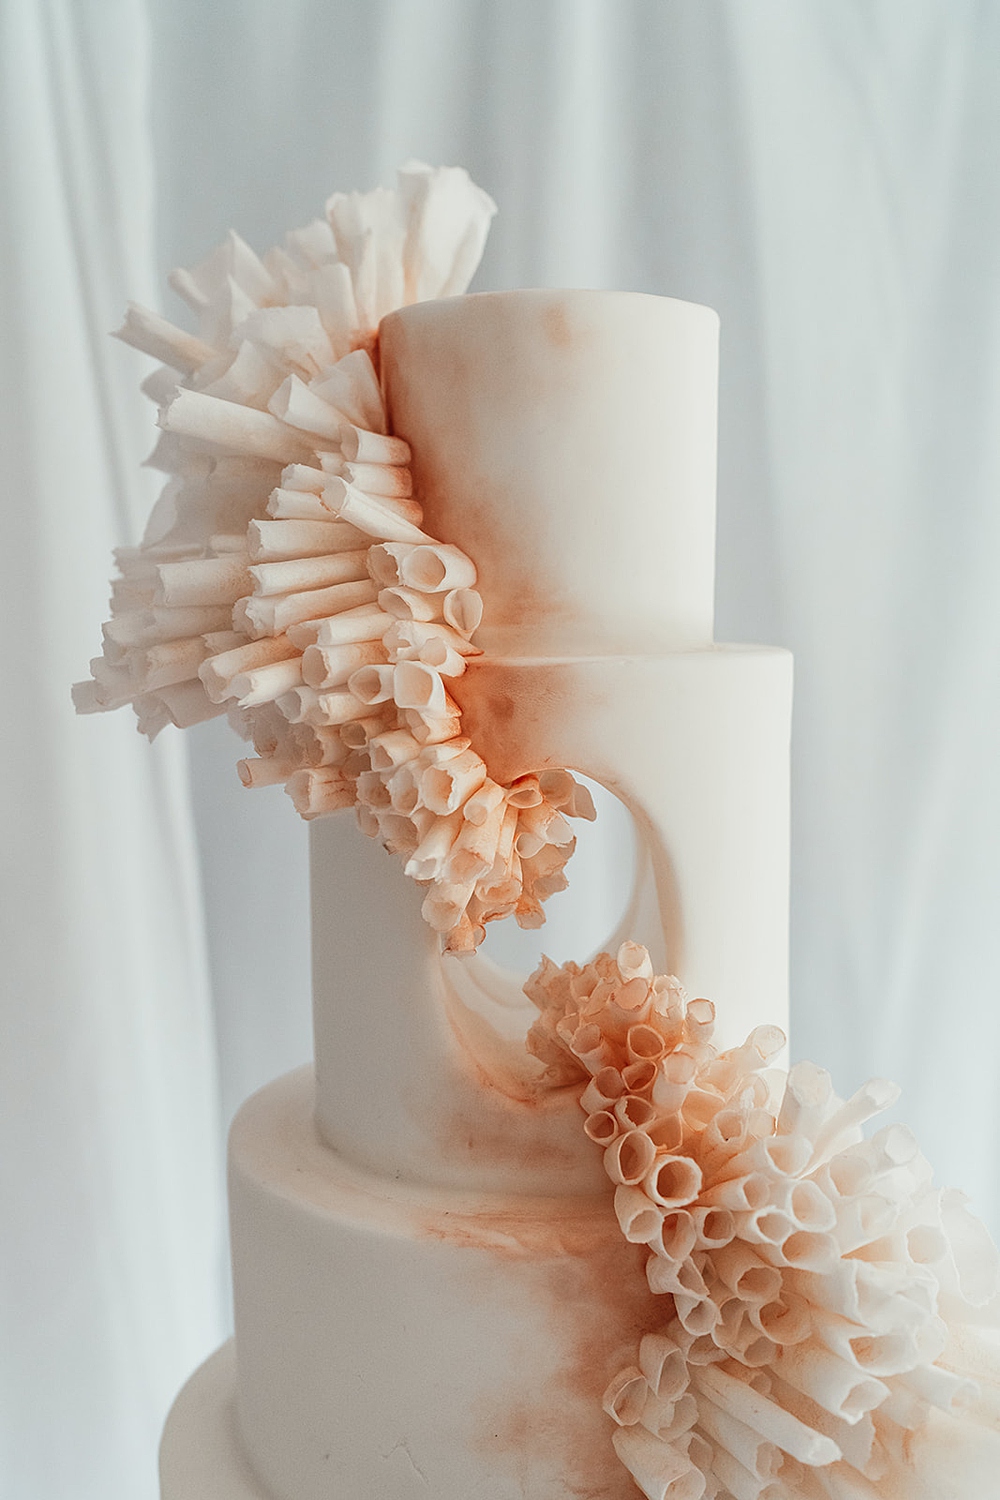 Cake designer Emma Page on luxury buttercream wedding cakes — Emma Page  Buttercream Cakes | Bespoke Wedding and Celebration Cakes | London, Kent,  Surrey, Sussex